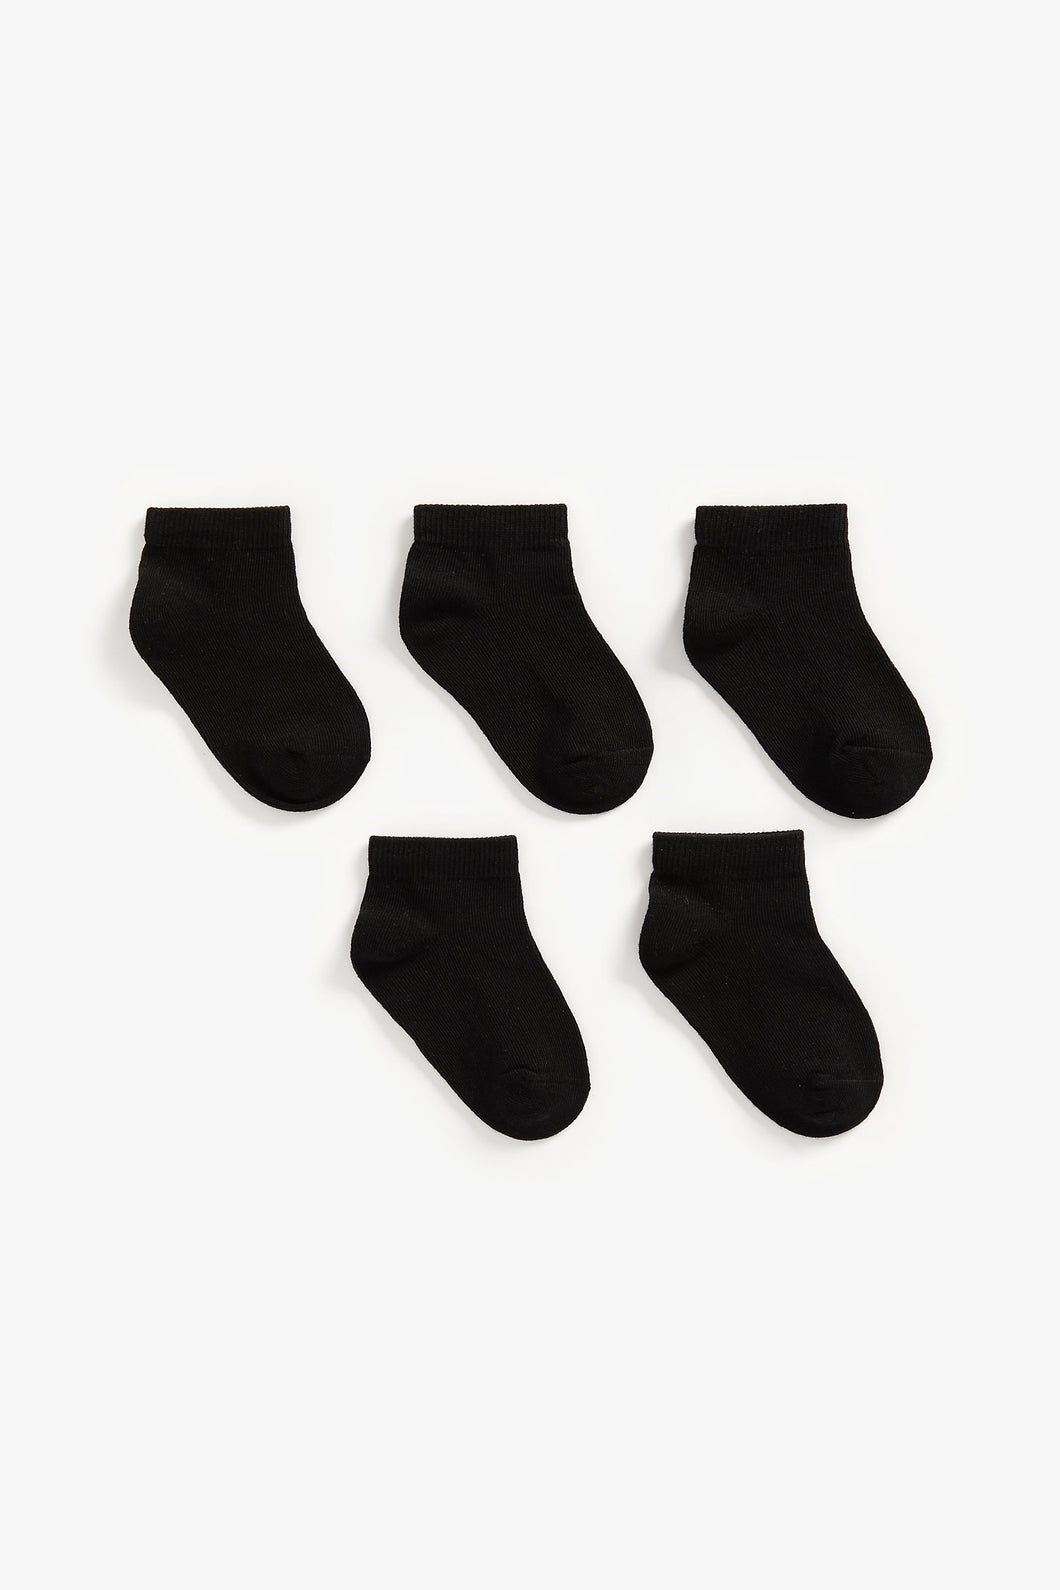 Mothercare Black Trainer Socks - 5 Pack